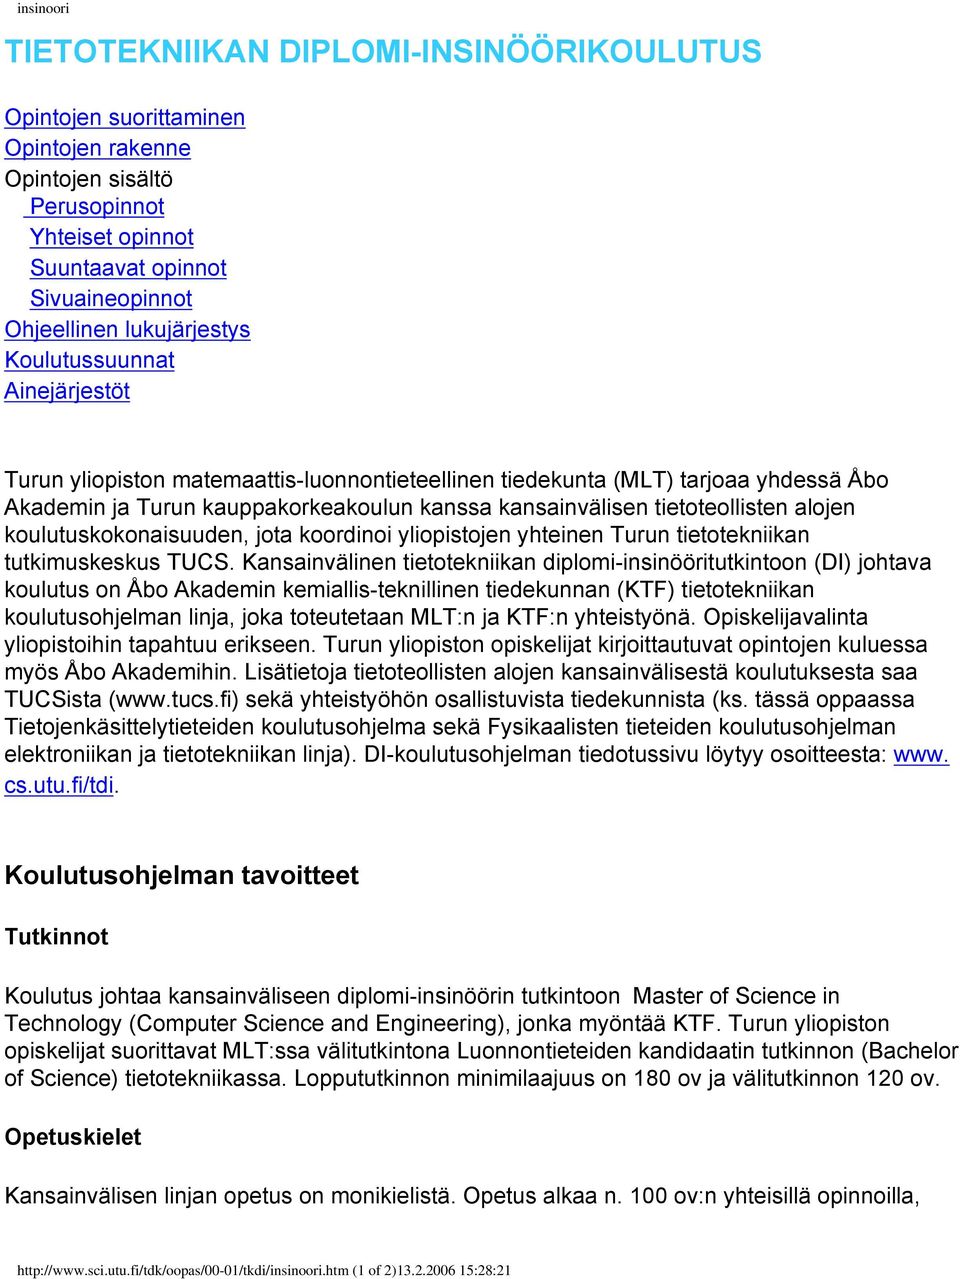 tietoteollisten alojen koulutuskokonaisuuden, jota koordinoi yliopistojen yhteinen Turun tietotekniikan tutkimuskeskus TUCS.